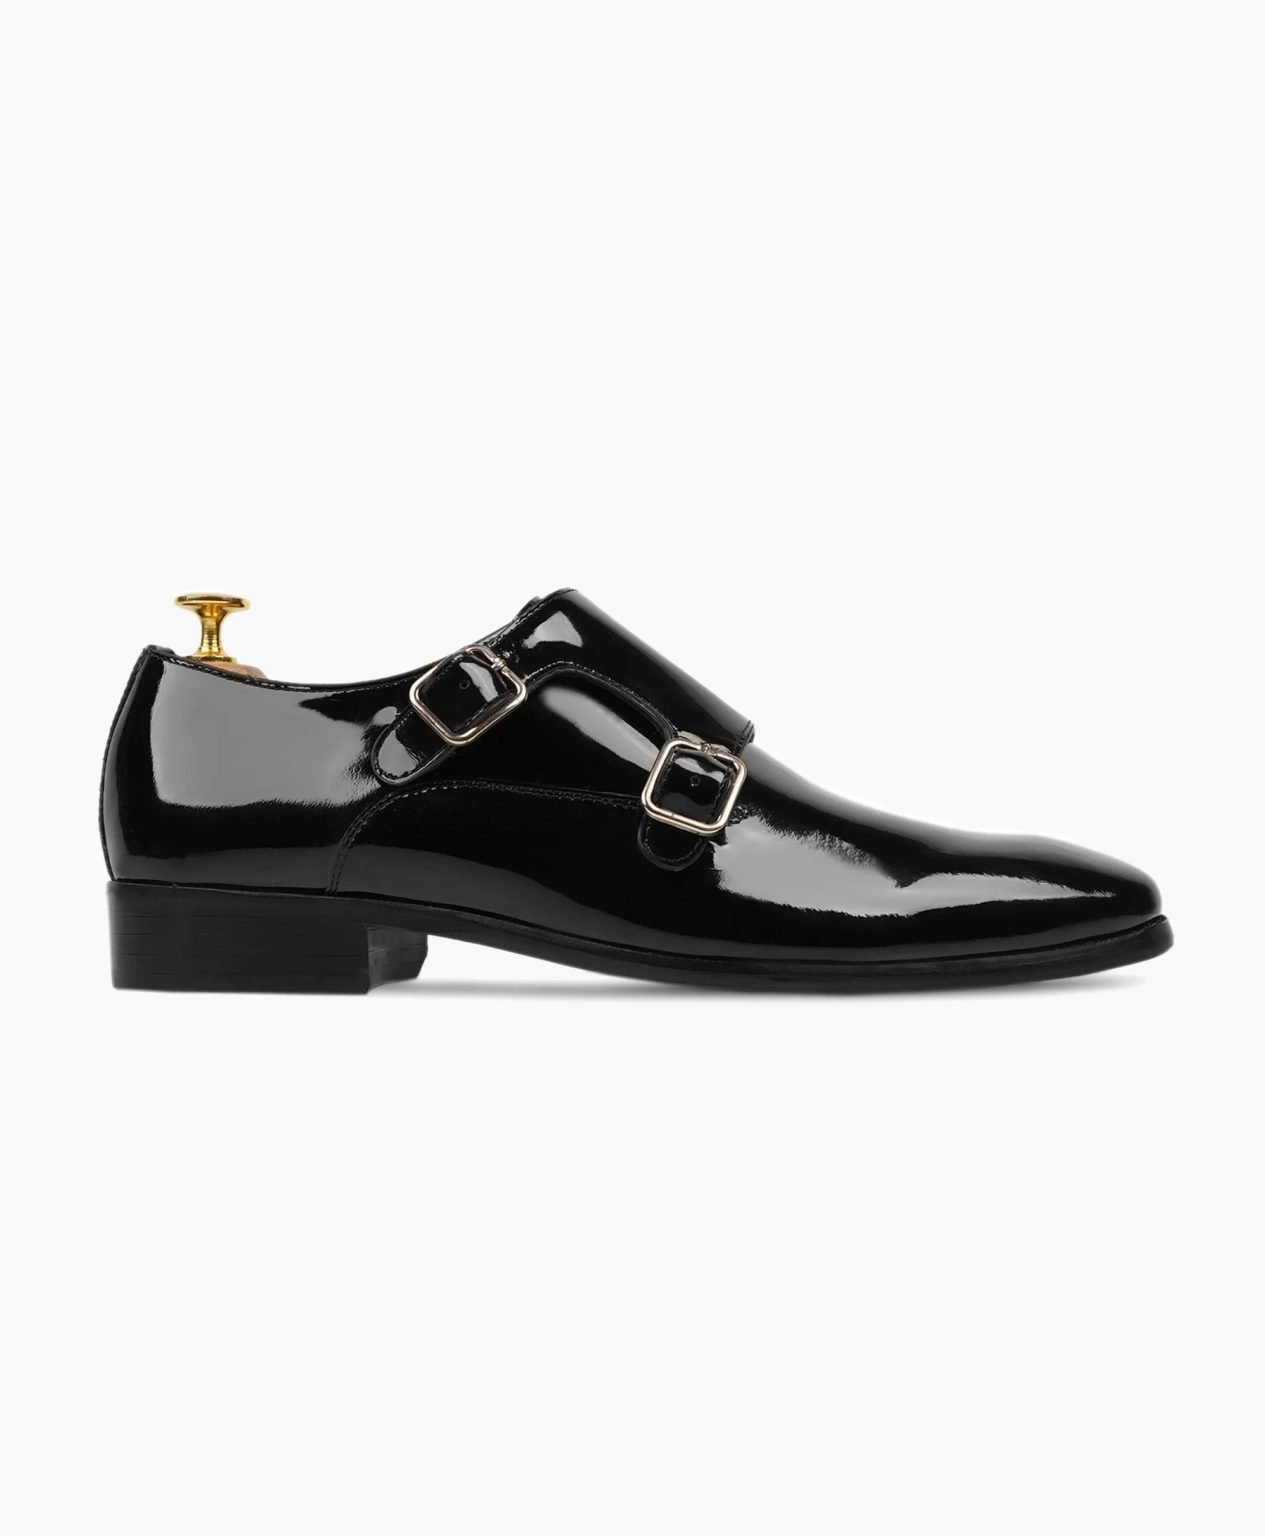 torridge-double-monkstrap-black-leather-shoes-image201